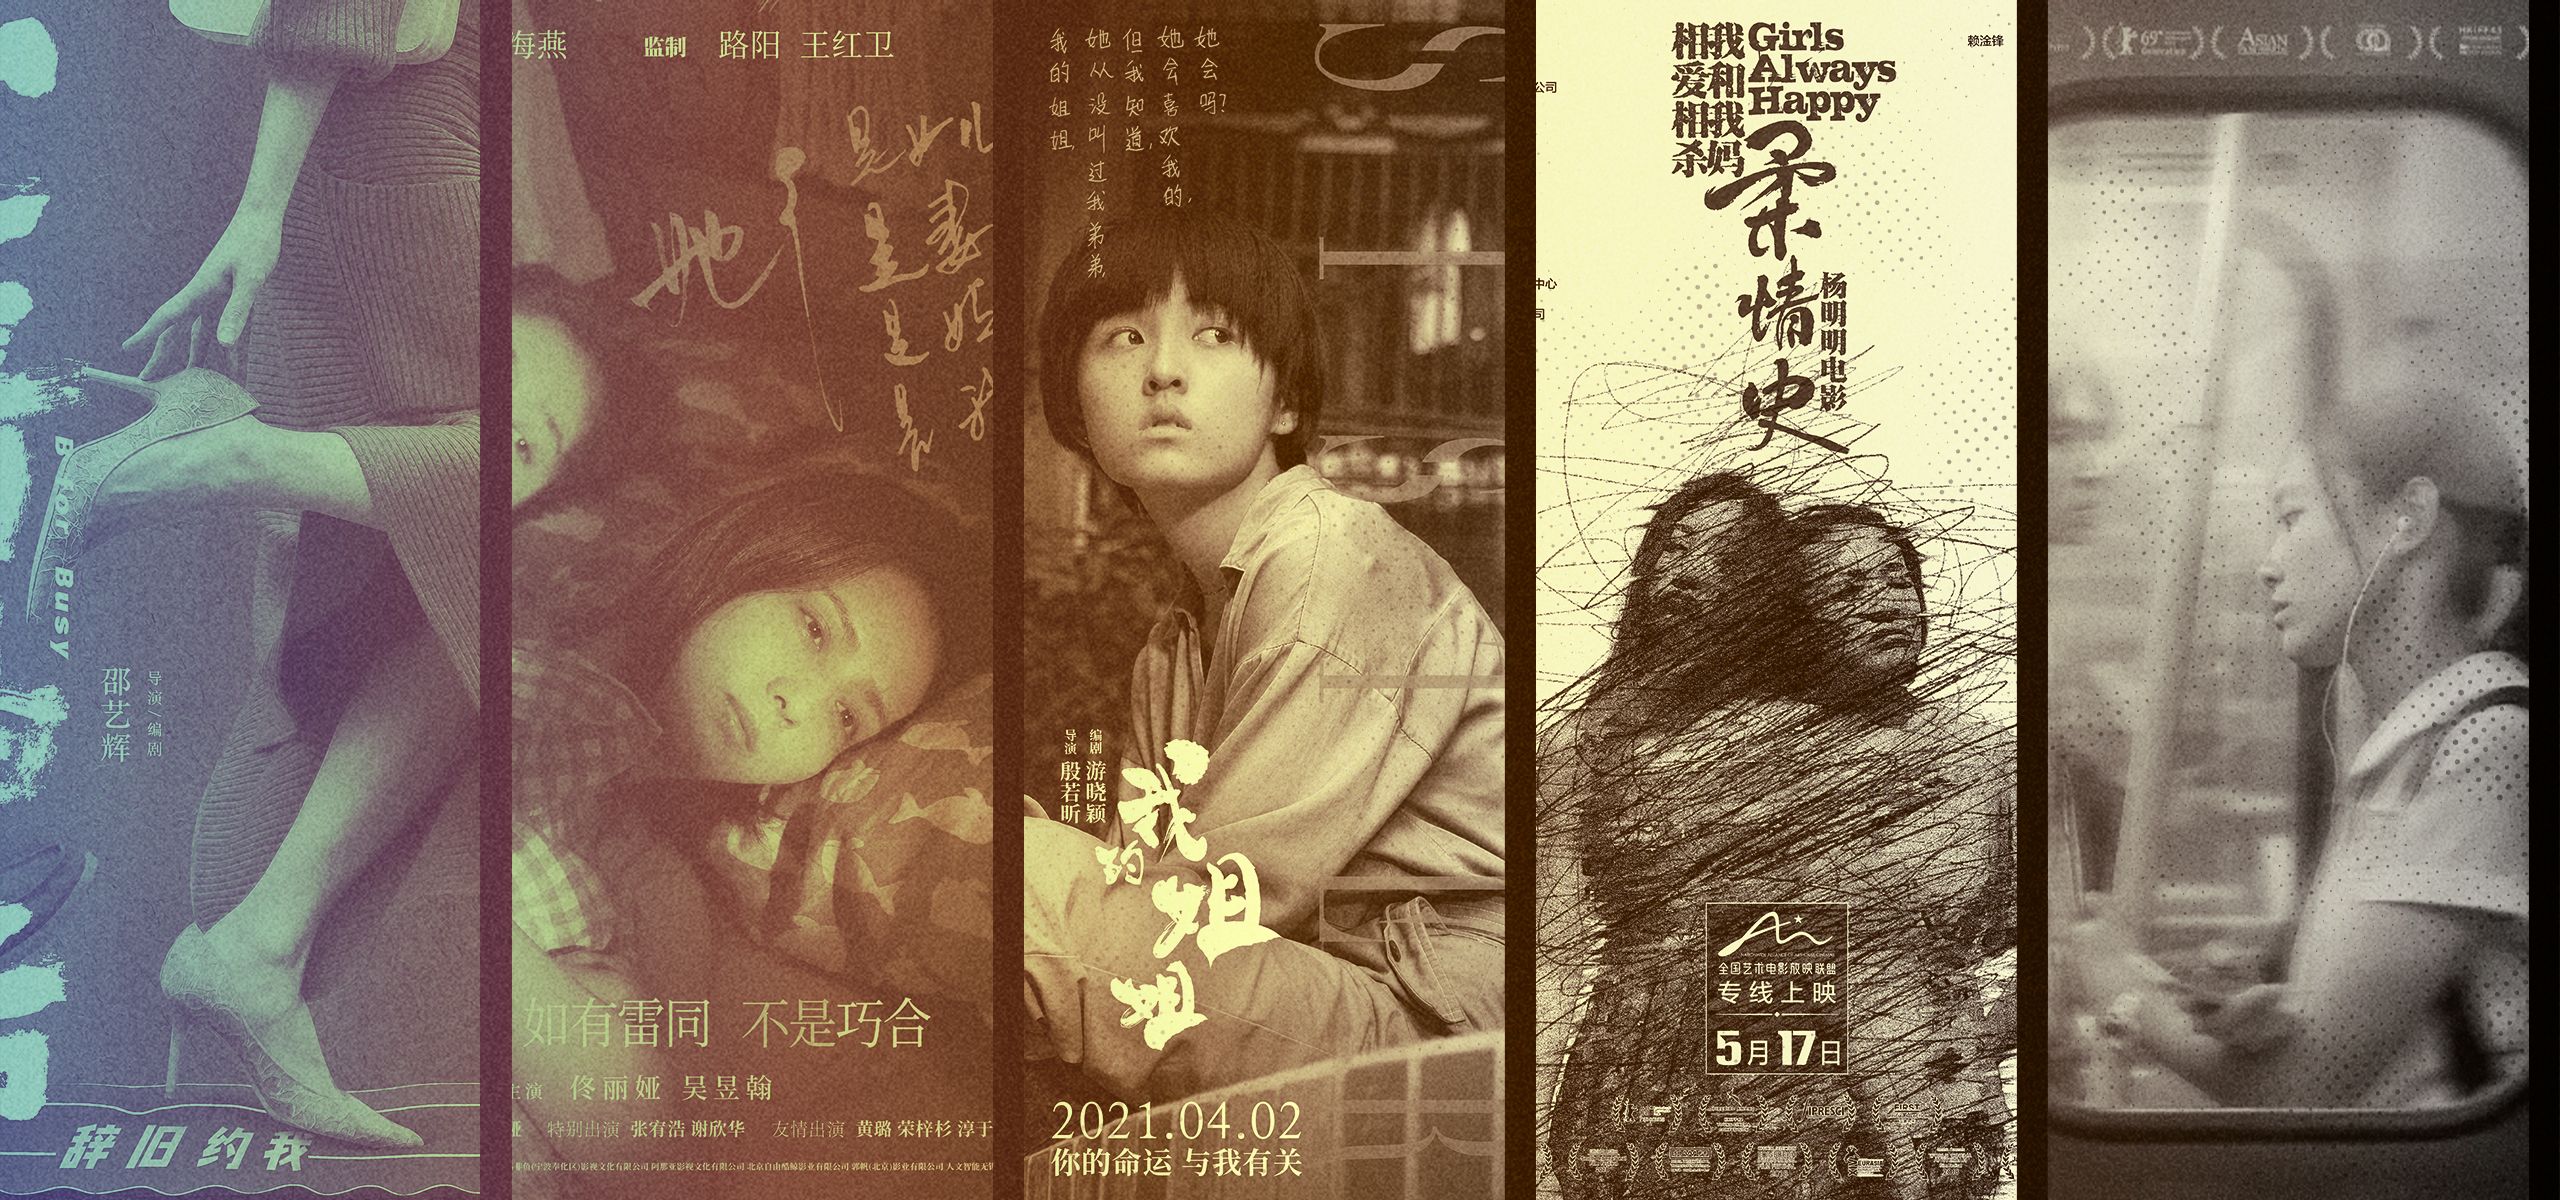 5部展示中国电影女性视角的电影